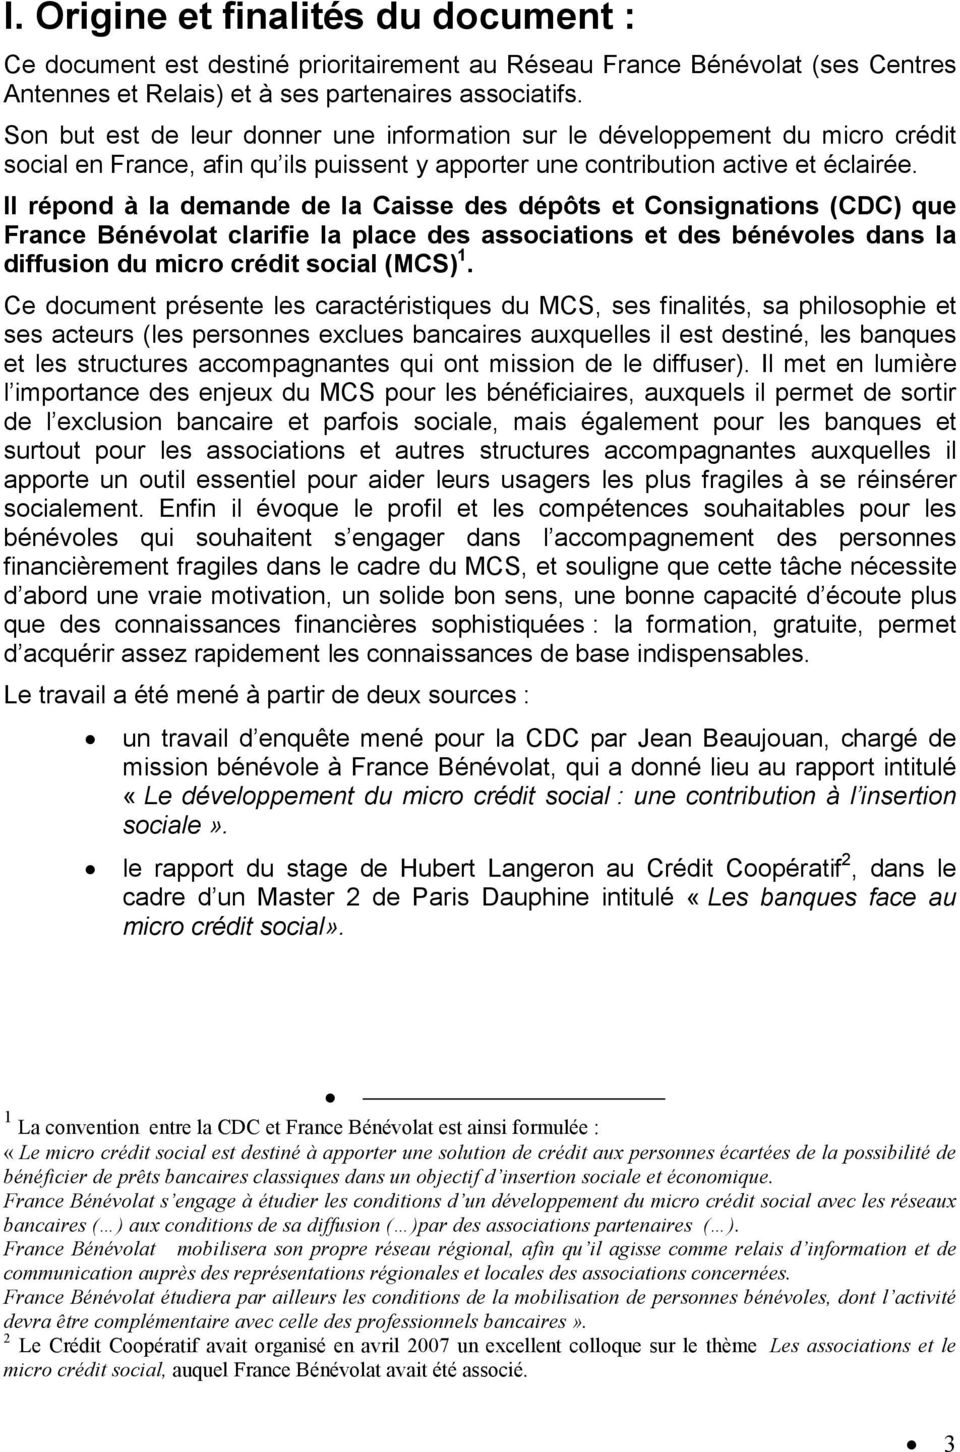 Il répond à la demande de la Caisse des dépôts et Consignations (CDC) que France Bénévolat clarifie la place des associations et des bénévoles dans la diffusion du micro crédit social (MCS) 1.